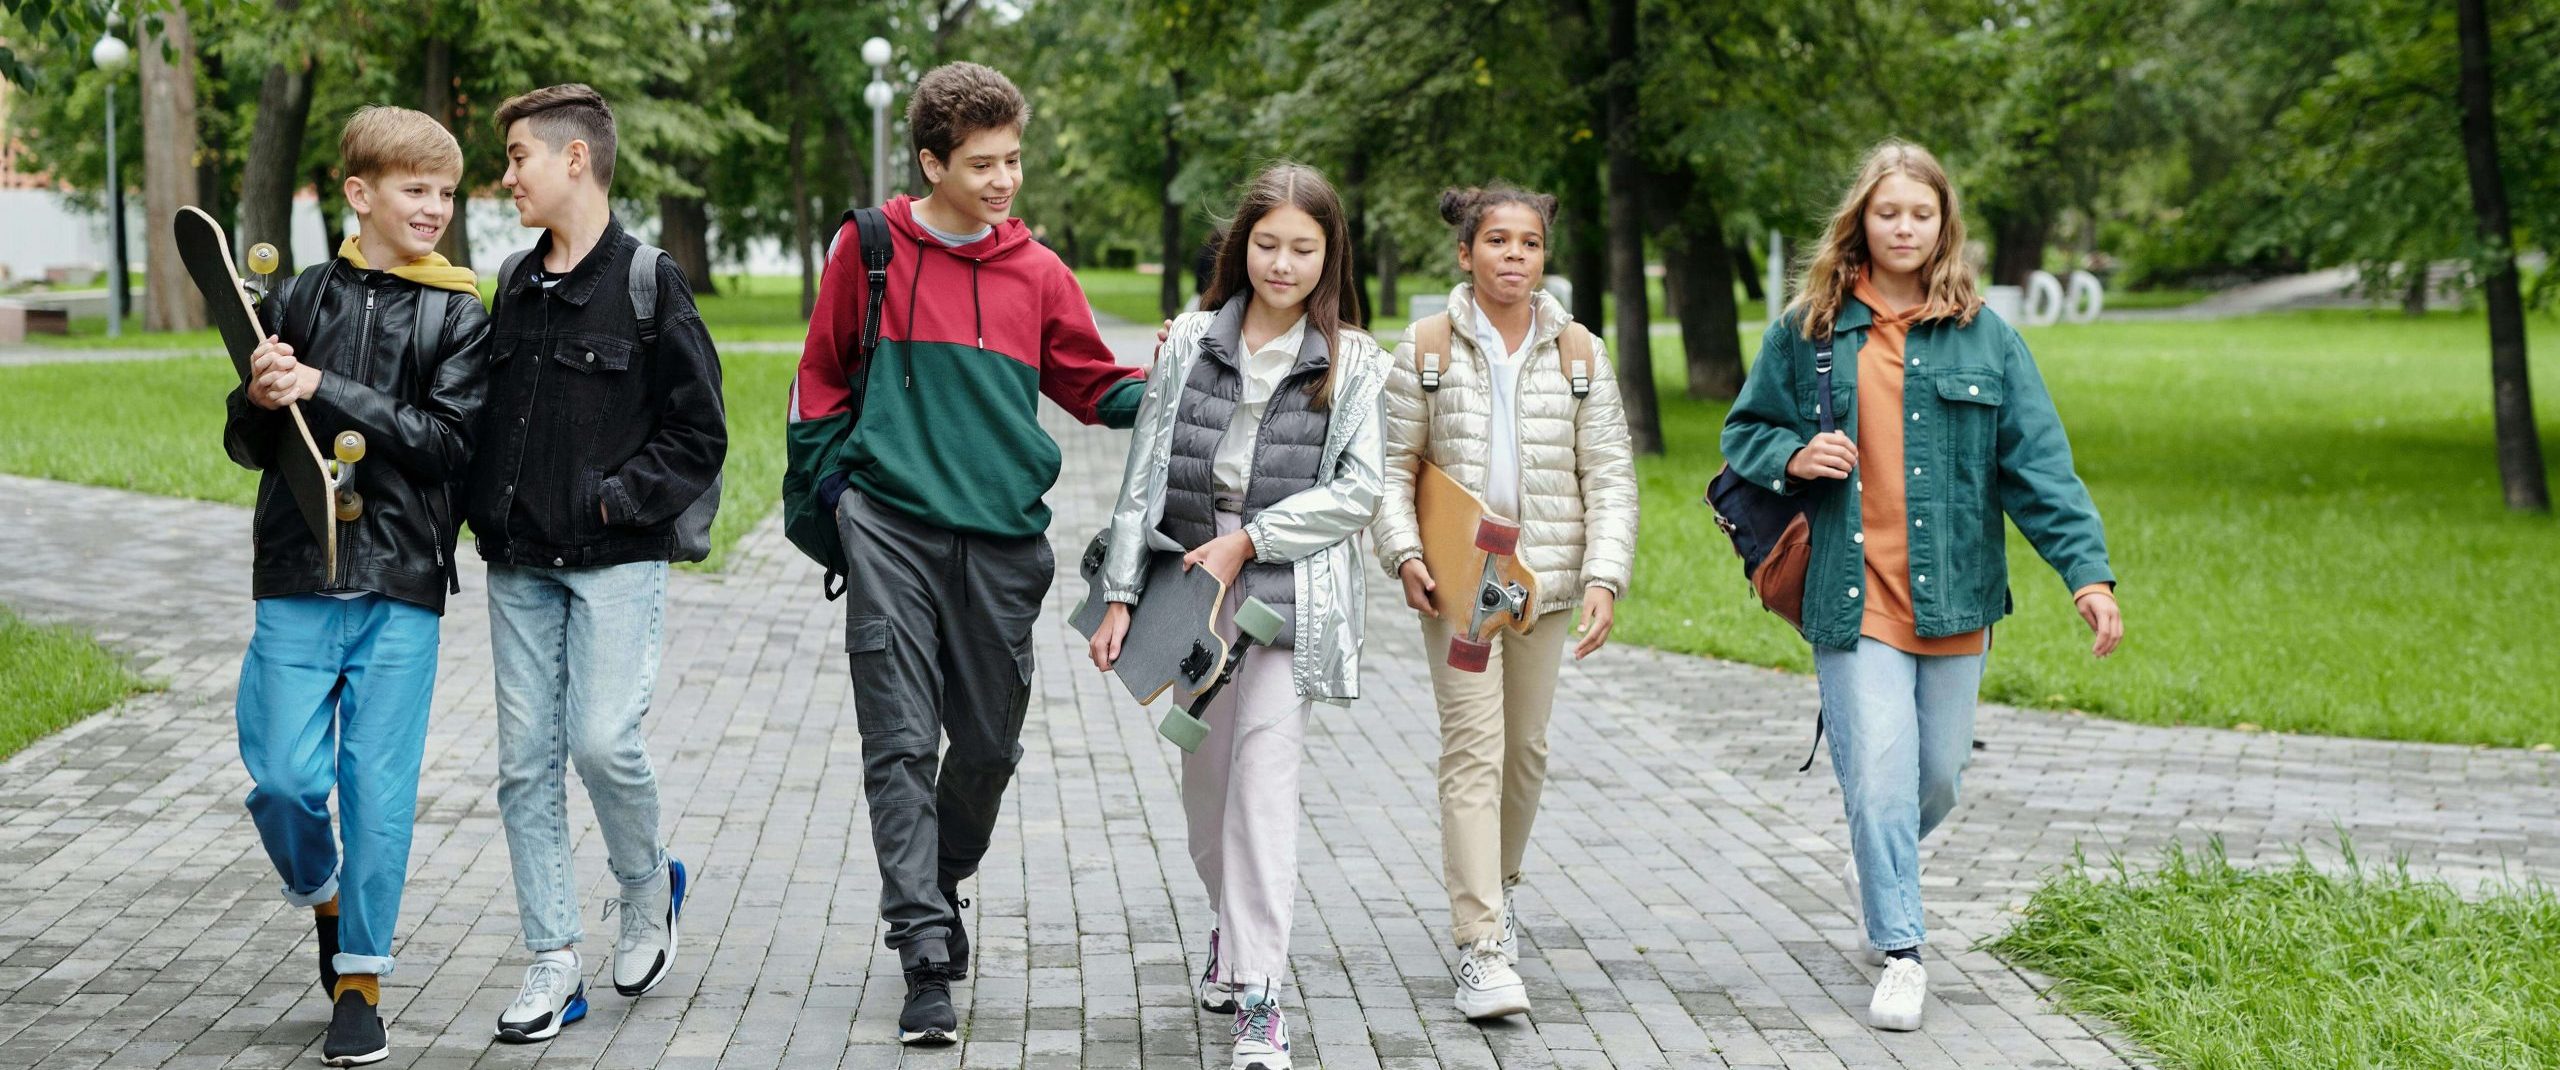 Adolescentes a passearem na escola juntos